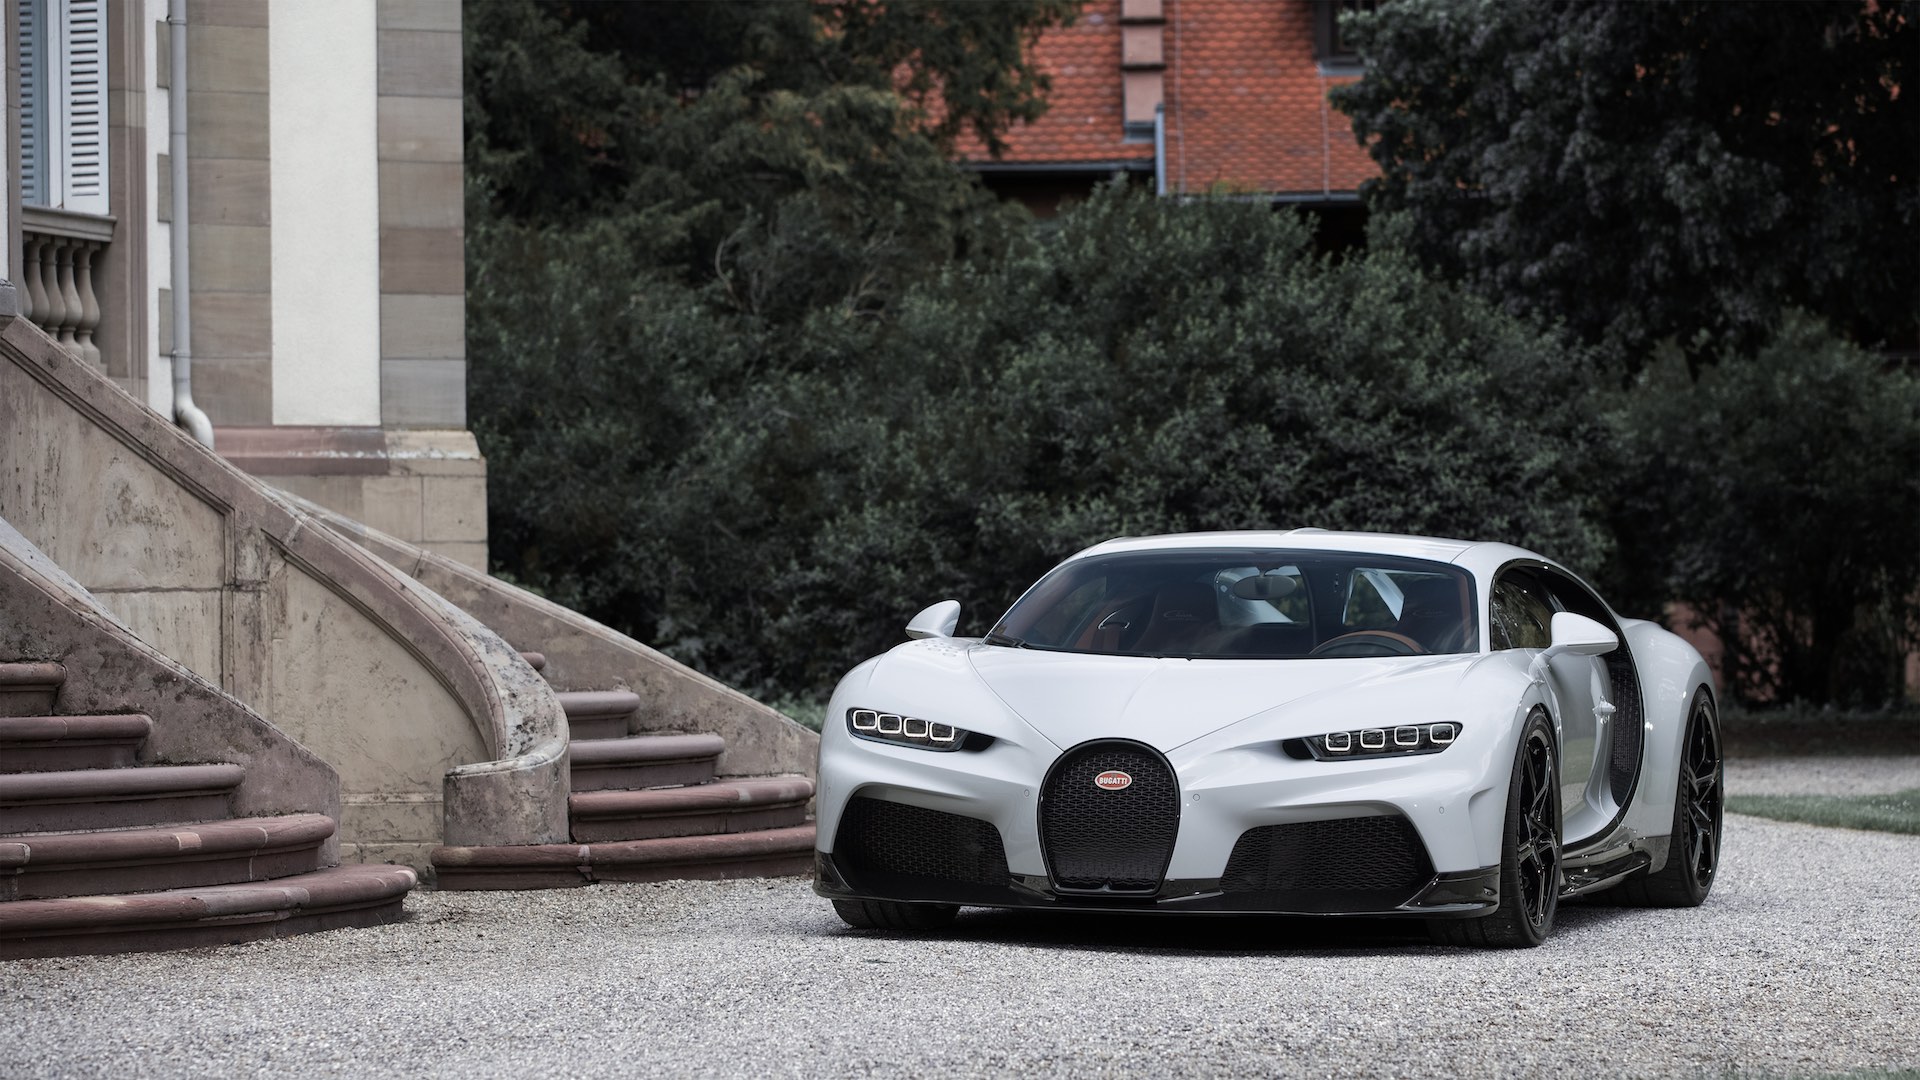 Siêu phẩm Bugatti Chiron Super Sport ra mắt: Giới hạn 60 xe, giá 3,9 triệu USD - Ảnh 2.